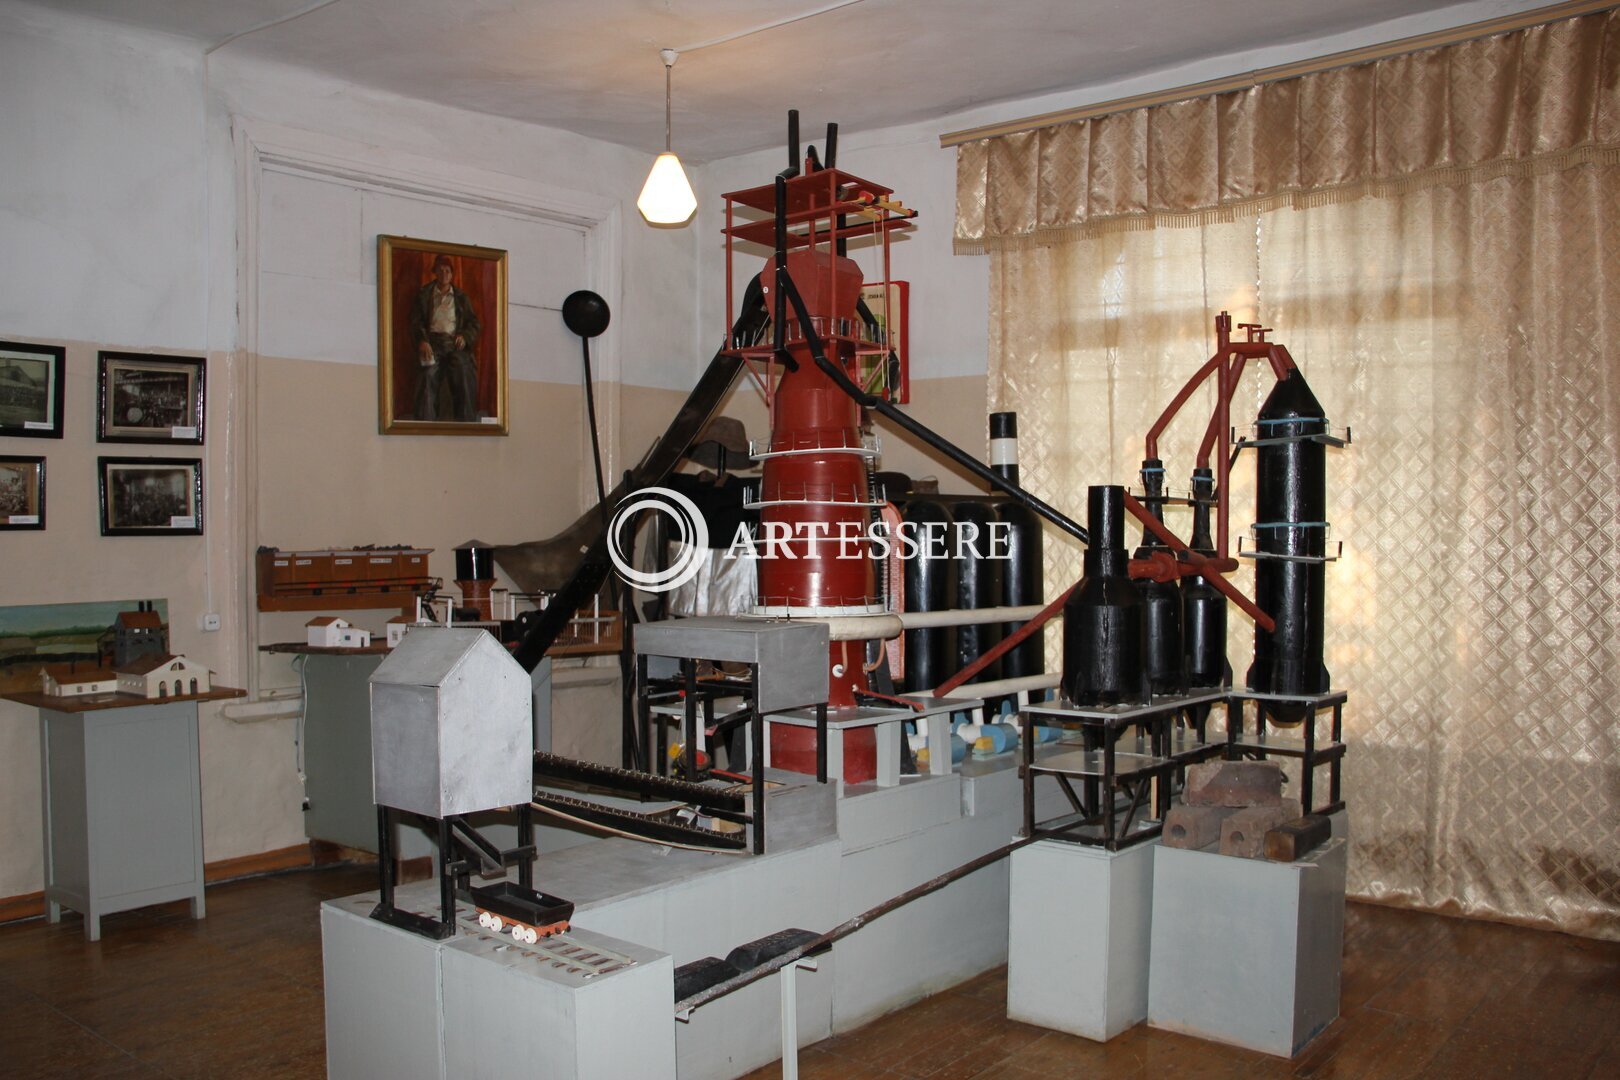 The Verkhnyaya Sinyachiha Museum of Local Lore